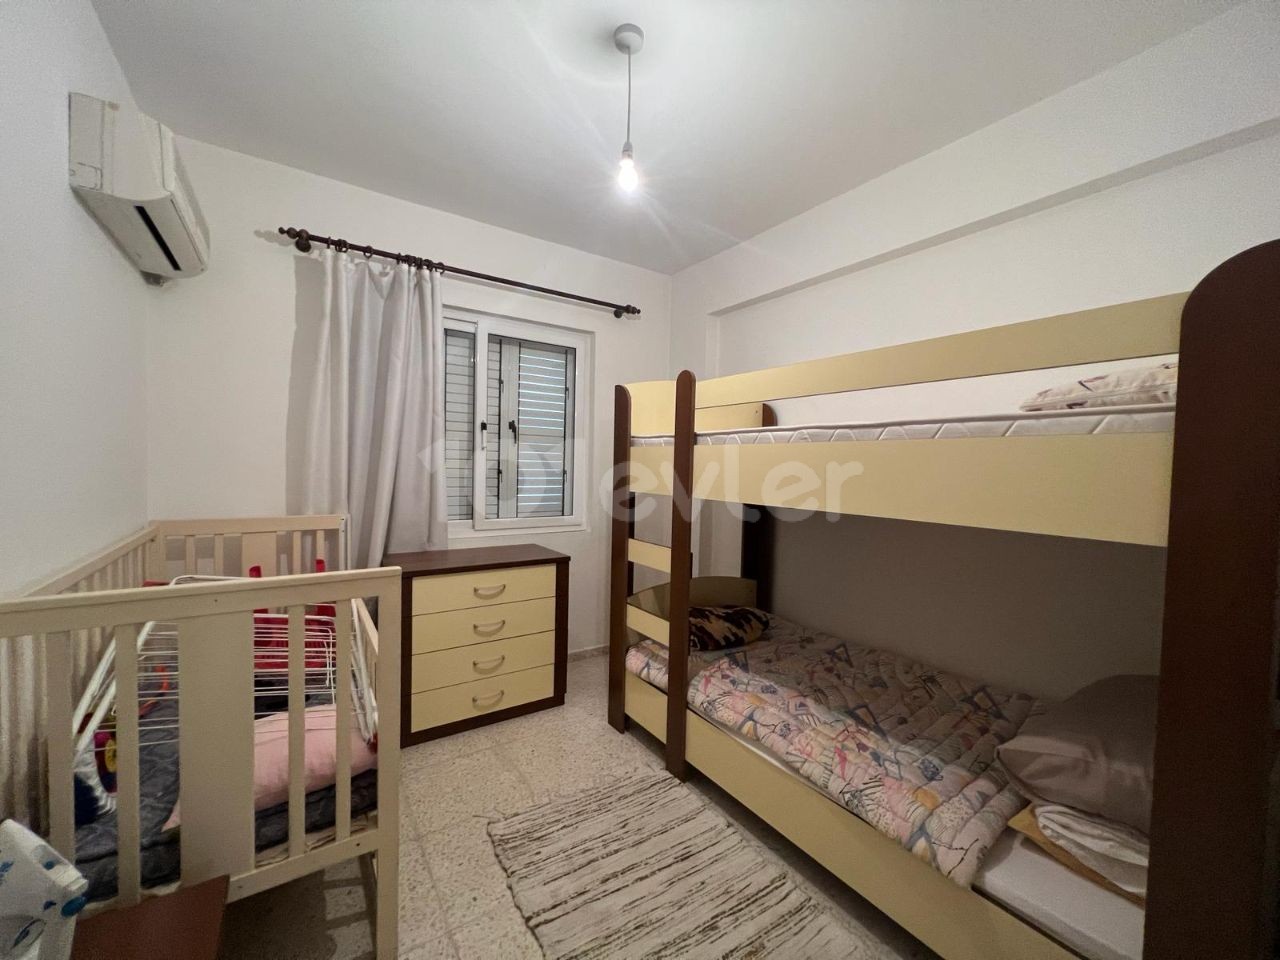 3+1 ground floor flat for sale in Küçük Kaymaklı area